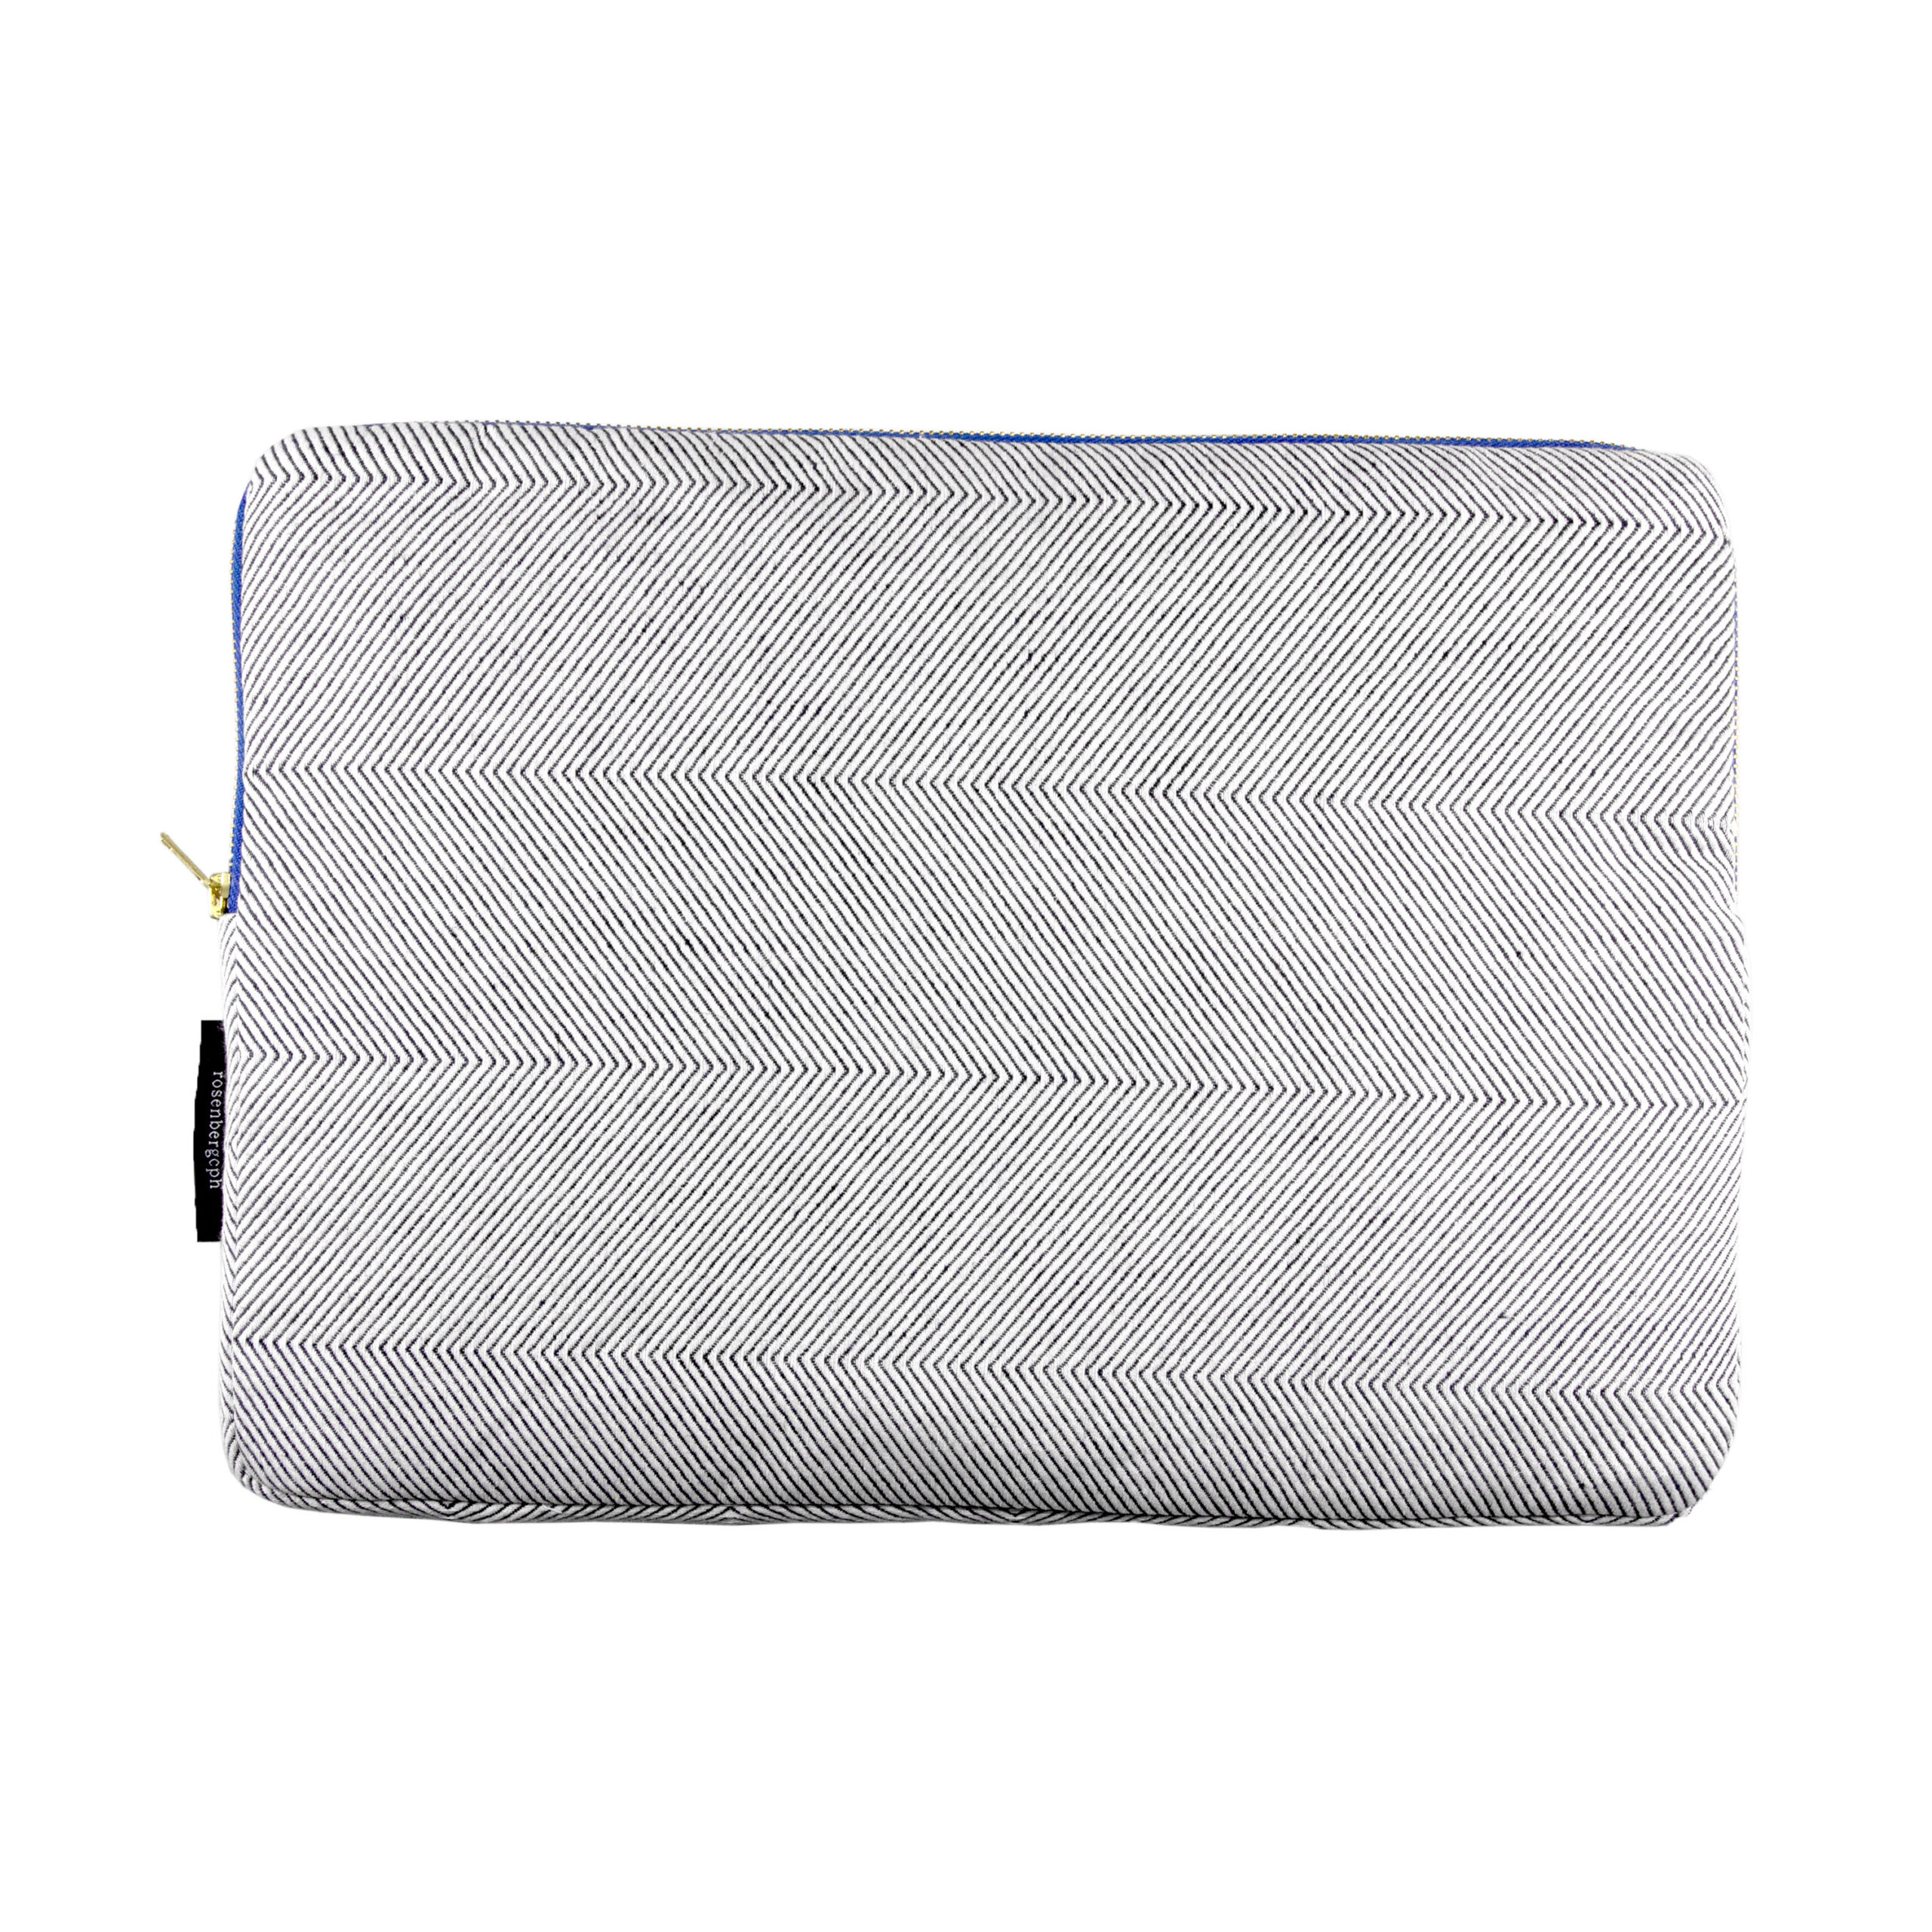 Escape laptop sleeve in light blue herringbone weave, design by Anne Rosenberg, RosenbergCph